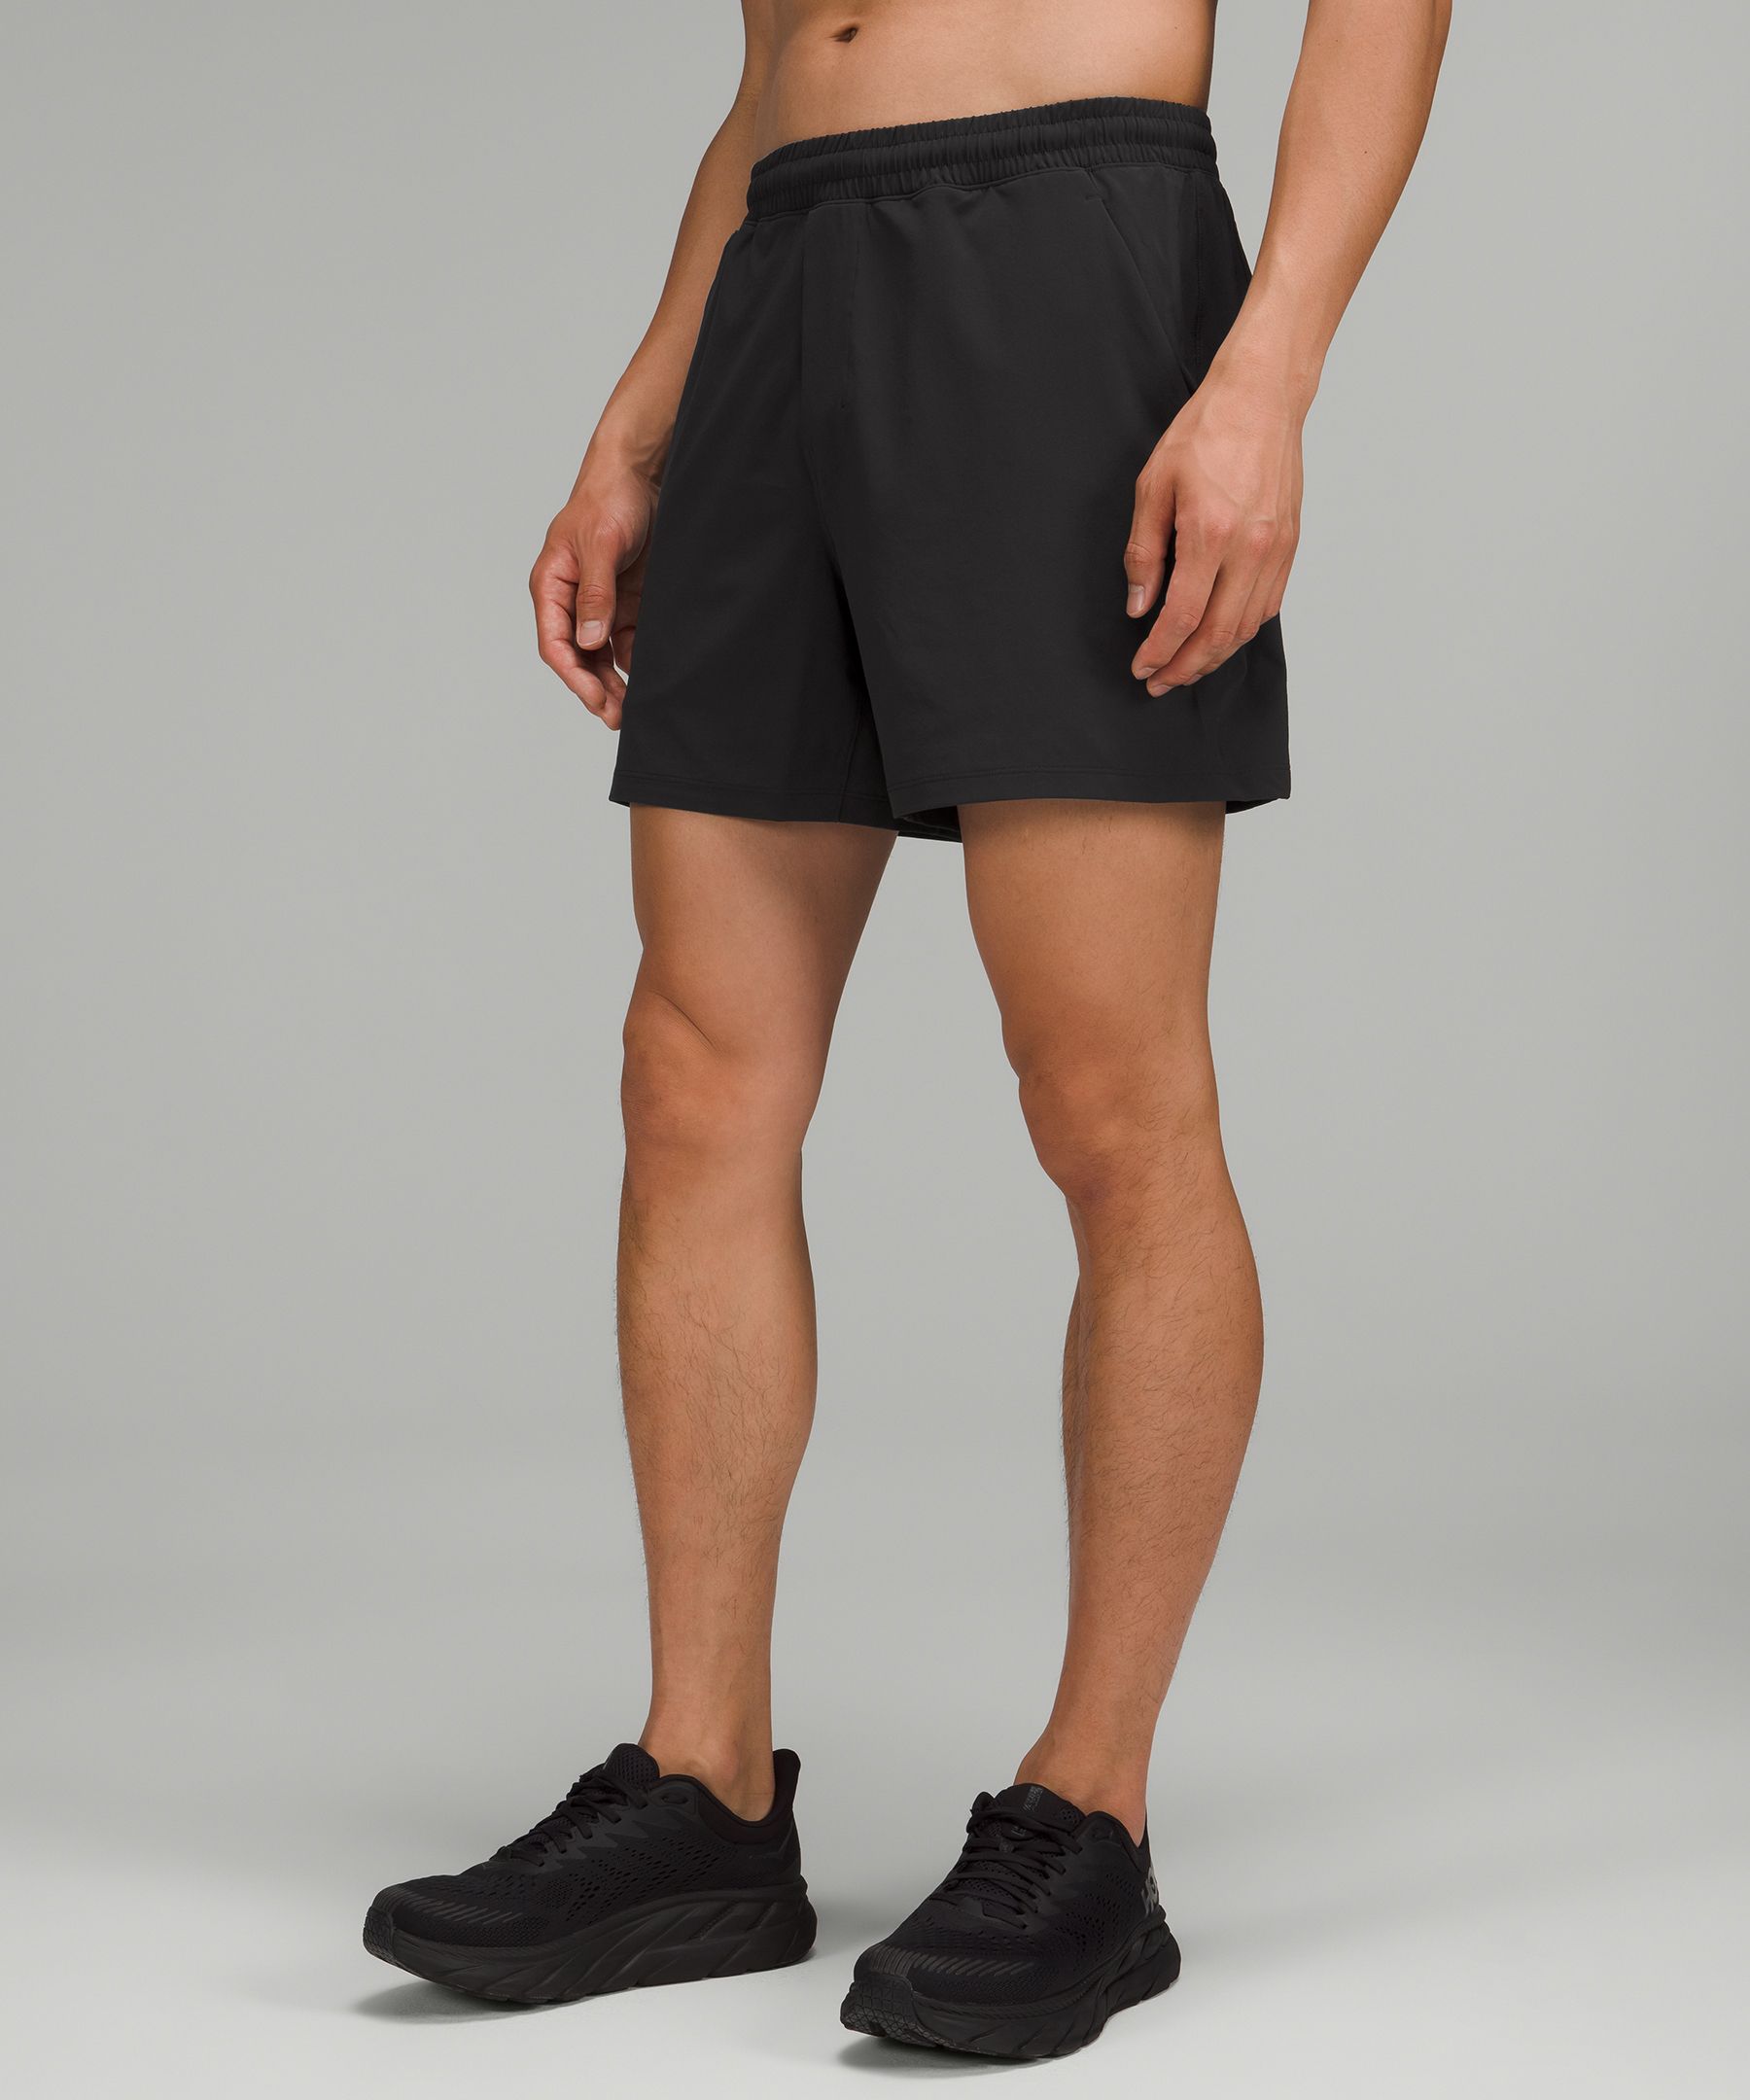 lululemon men's 5 inch shorts